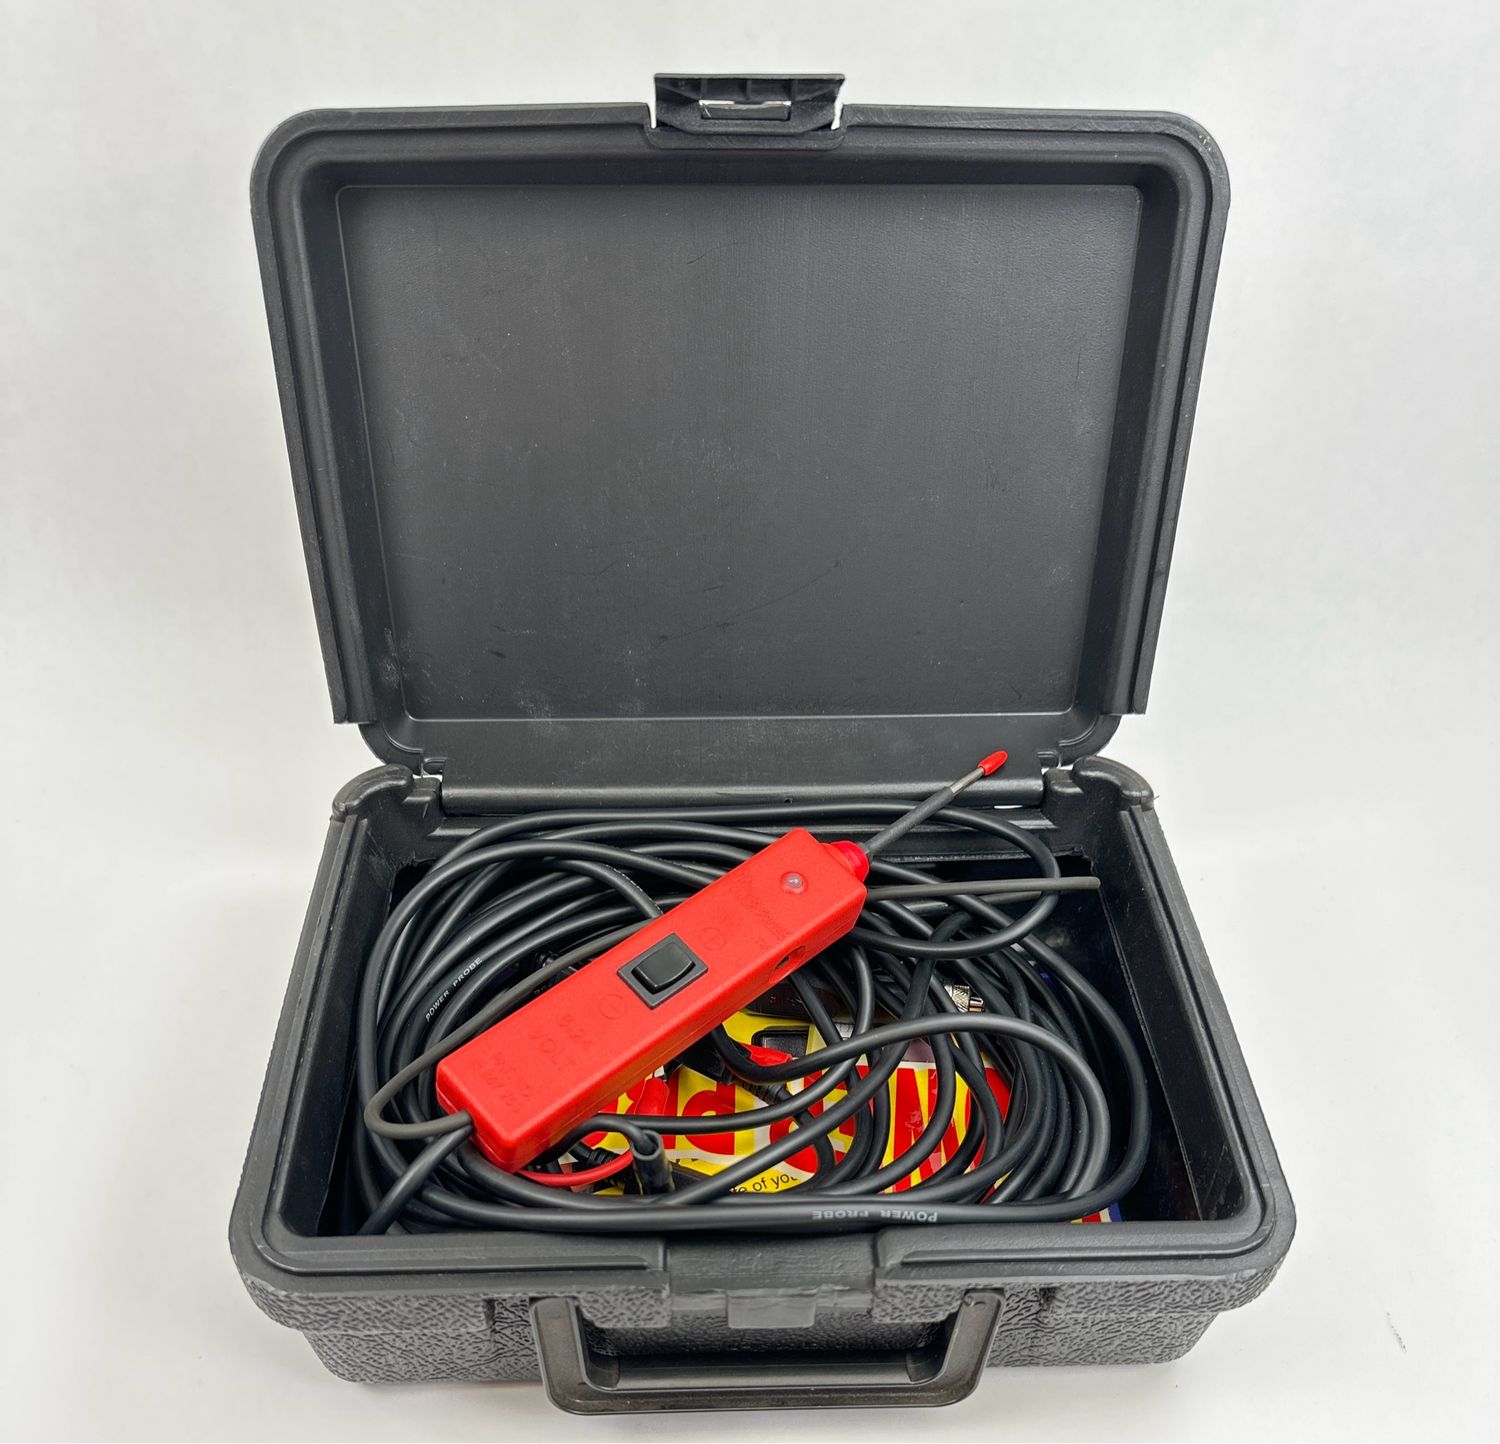 Power Probe 6-24 Volt Tester w/ Case